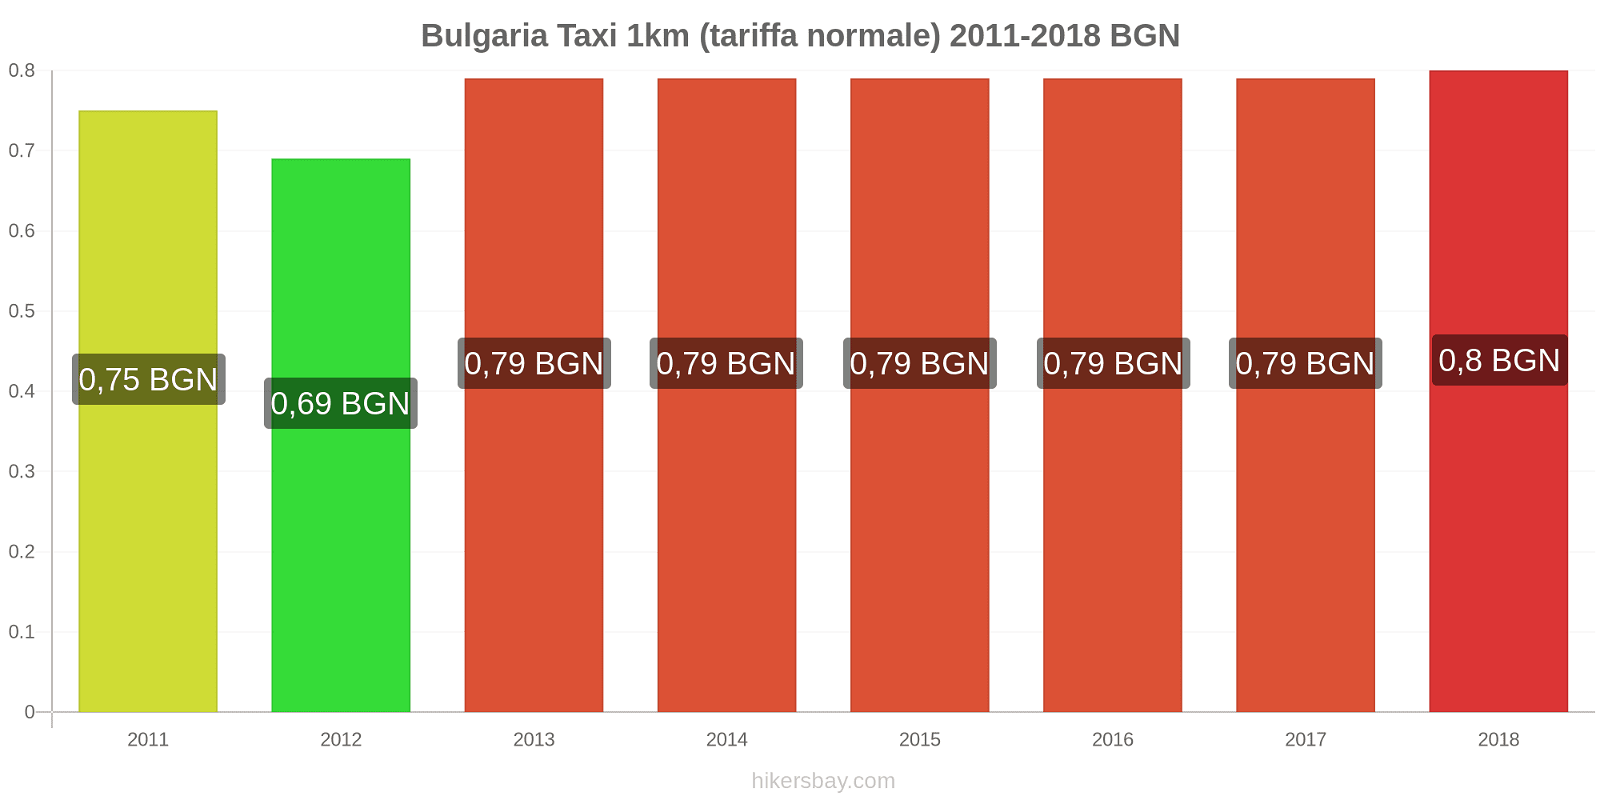 Bulgaria cambi di prezzo Taxi 1km (tariffa normale) hikersbay.com